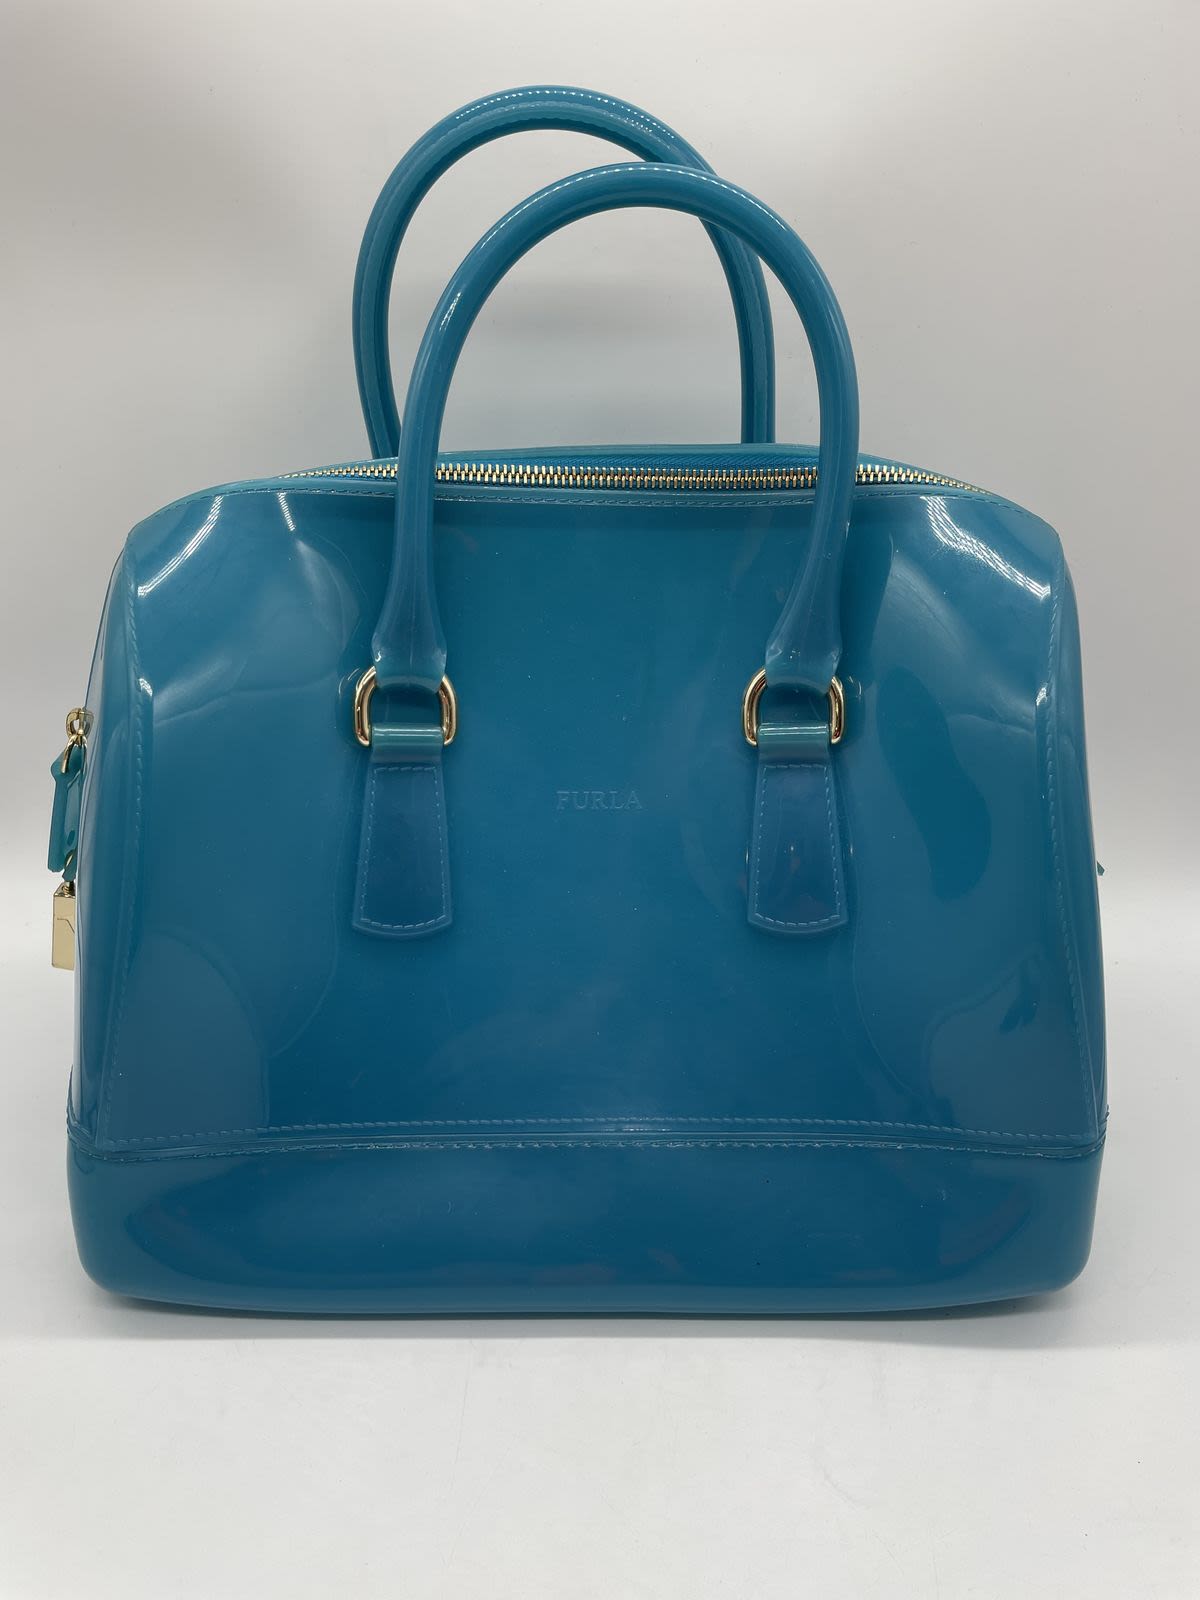 Furla Authenticated Candy Bag Handbag